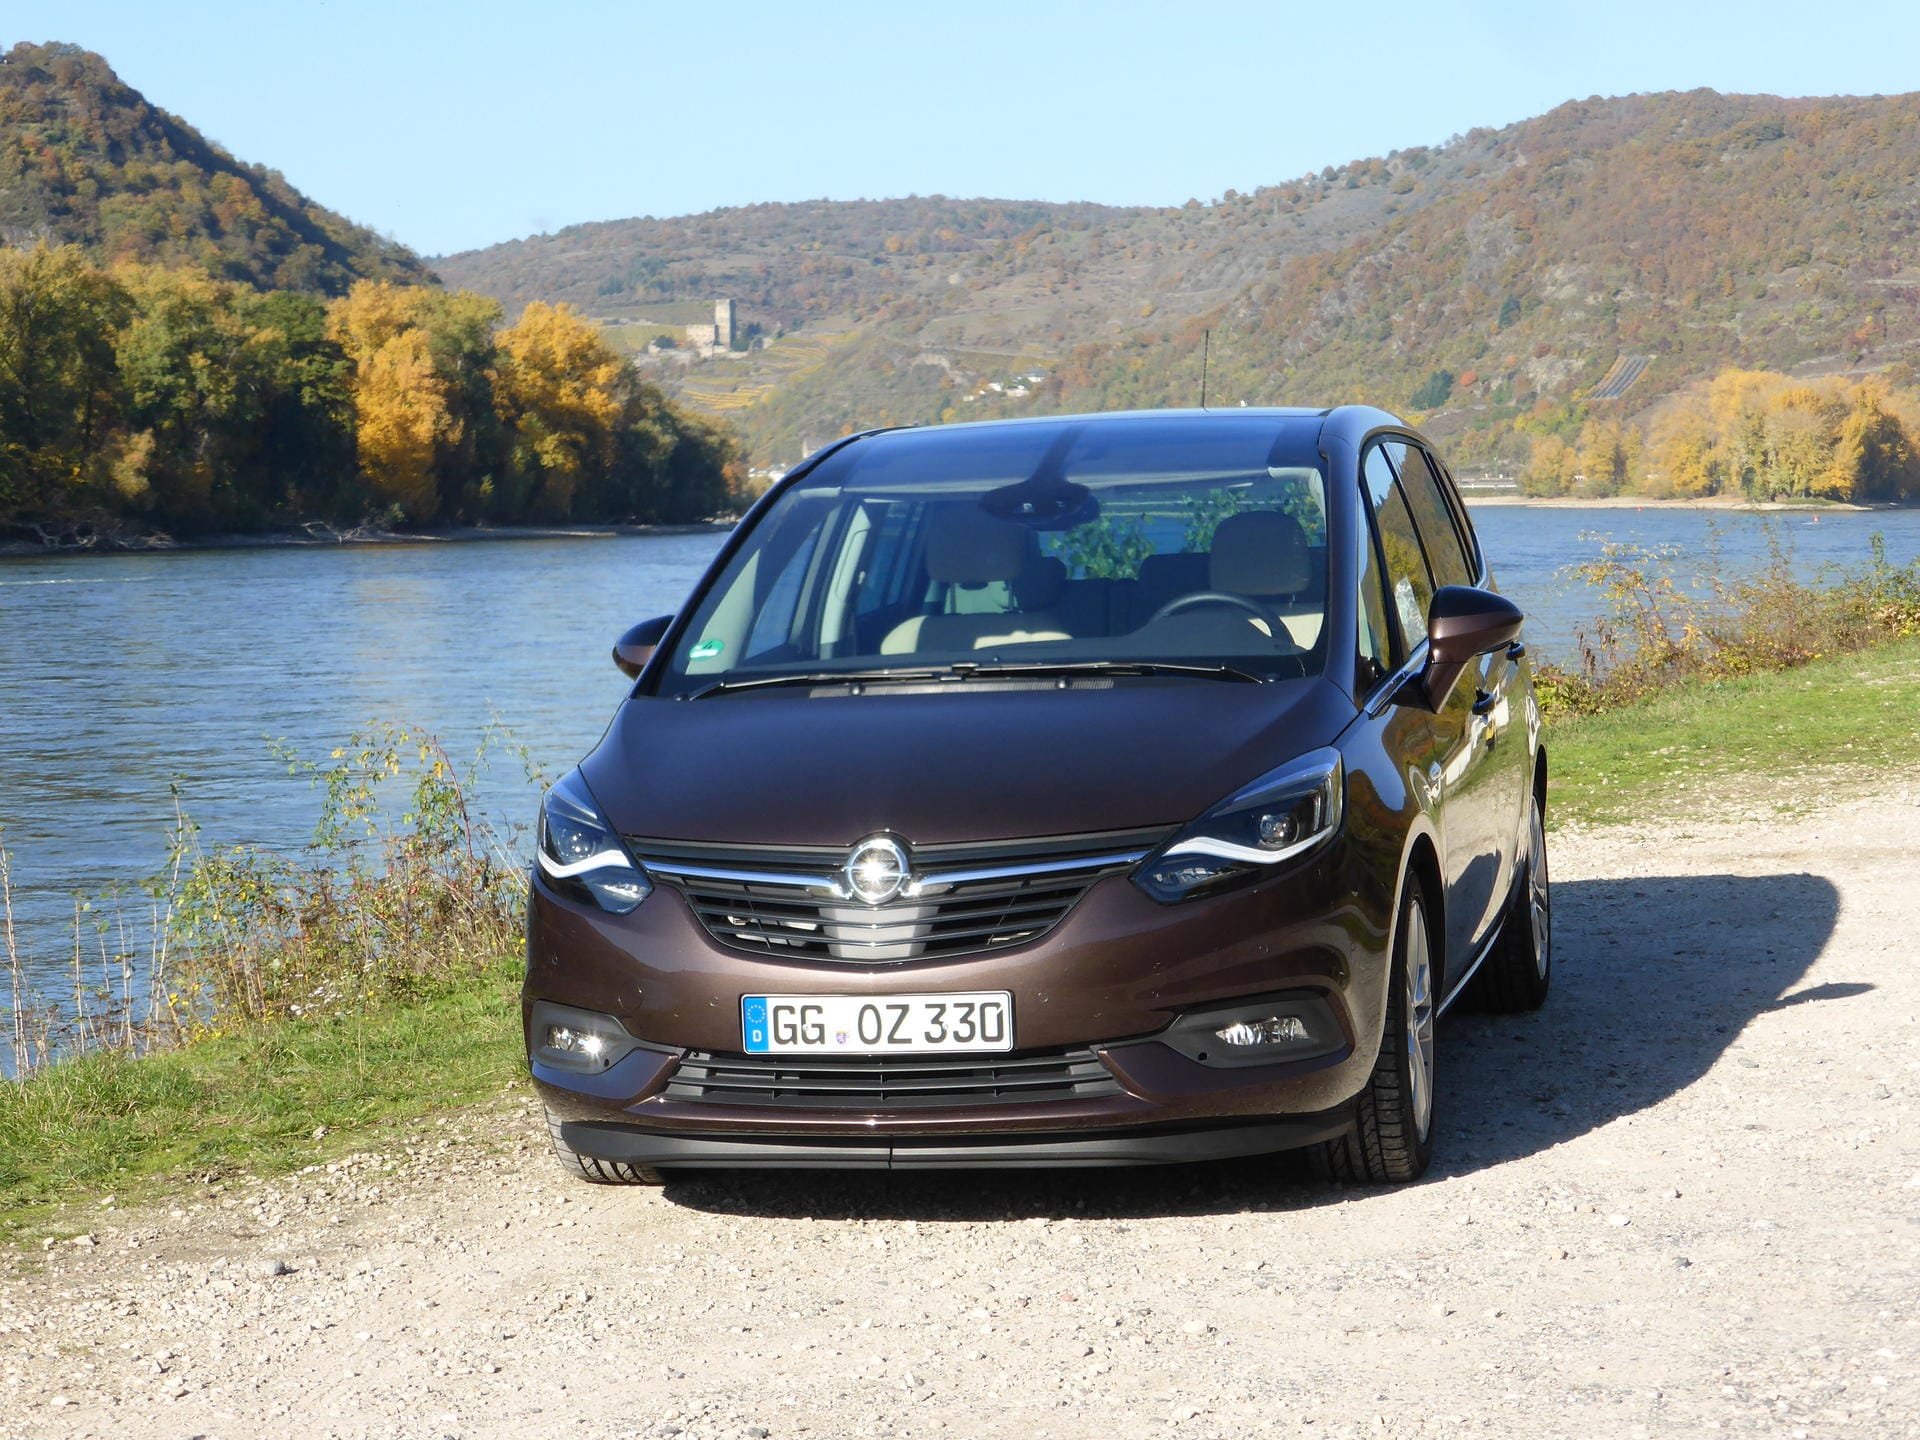 Obwohl Vans ja ein bisschen aus der Mode gekommen sind, ist man mit dem Opel Zafira als "Transporter" bestens bedient.